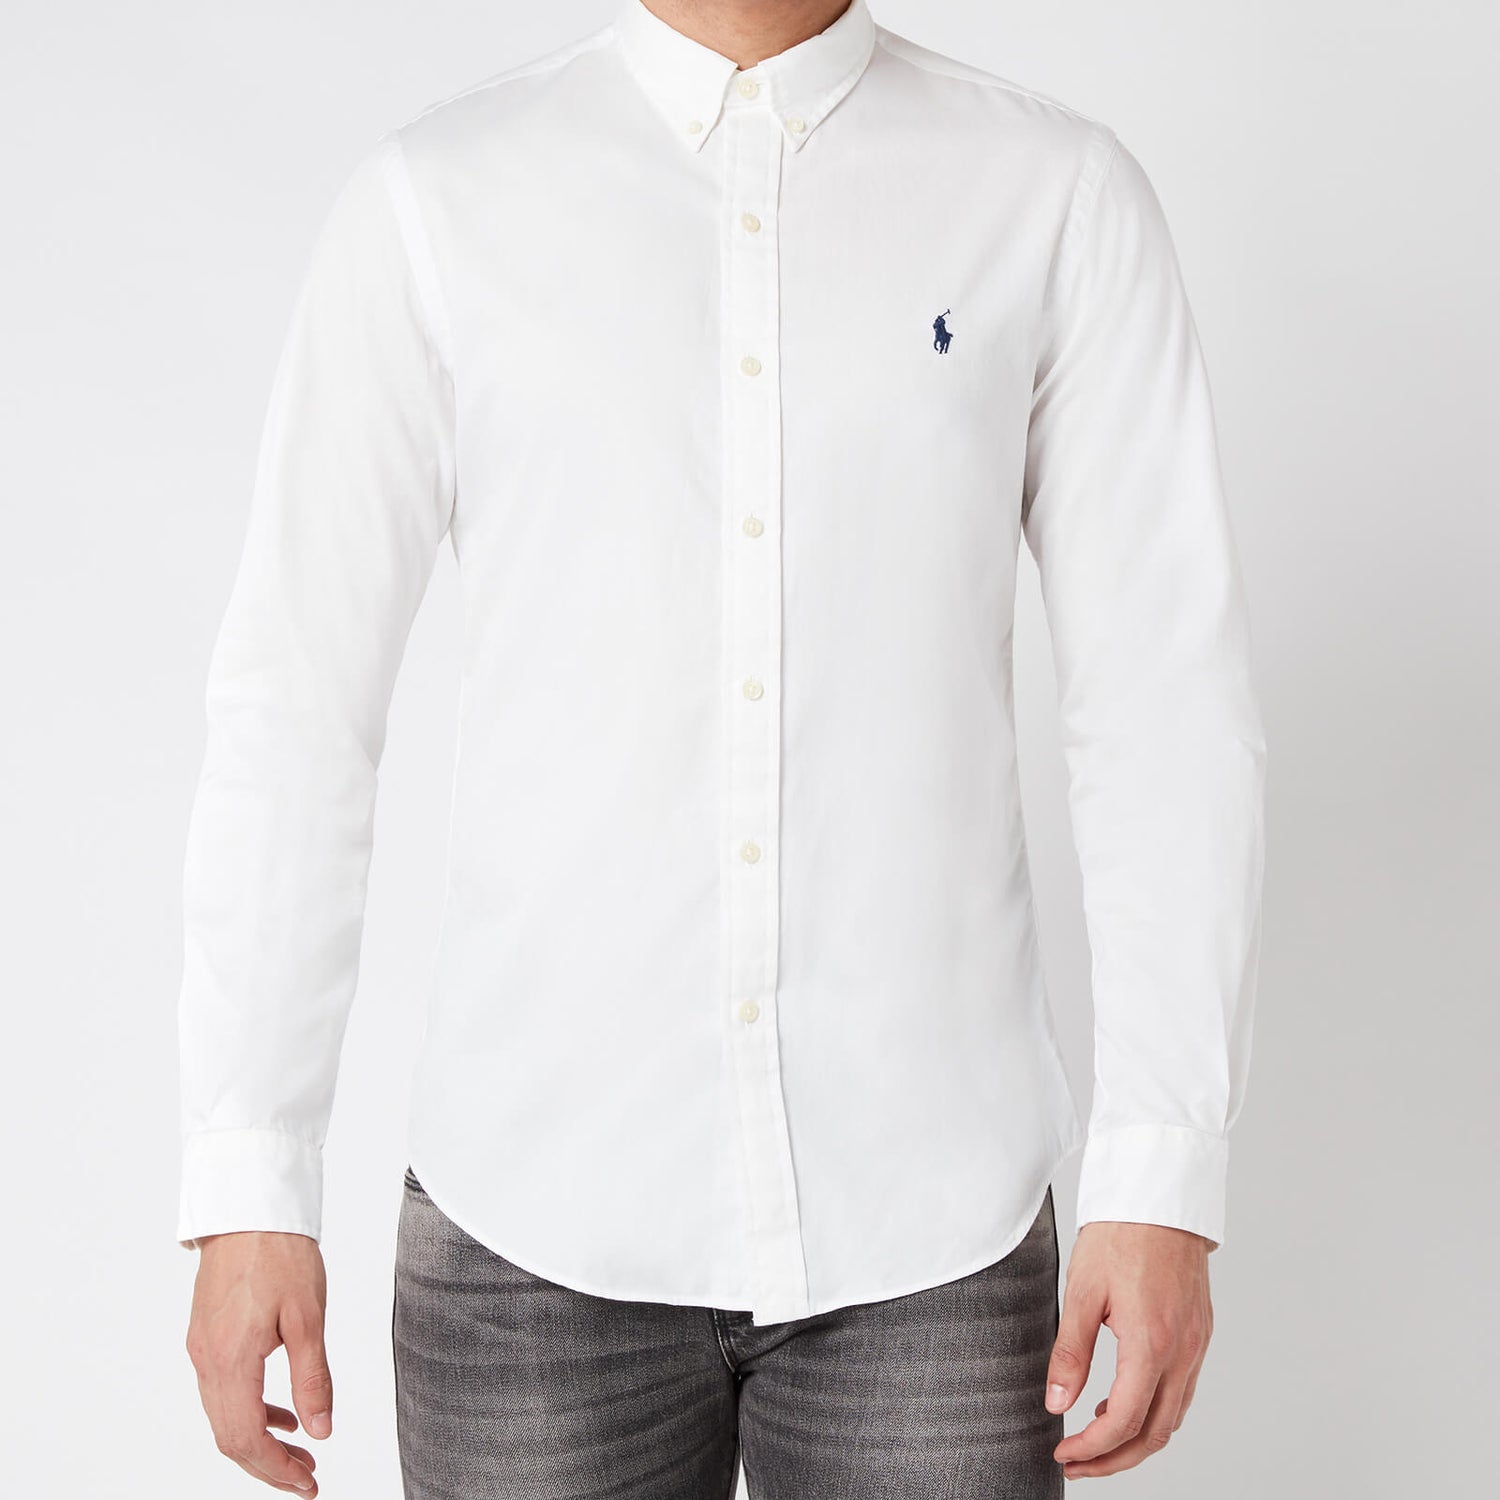 Polo Ralph Lauren Men's Slim Fit Chino Shirt - White